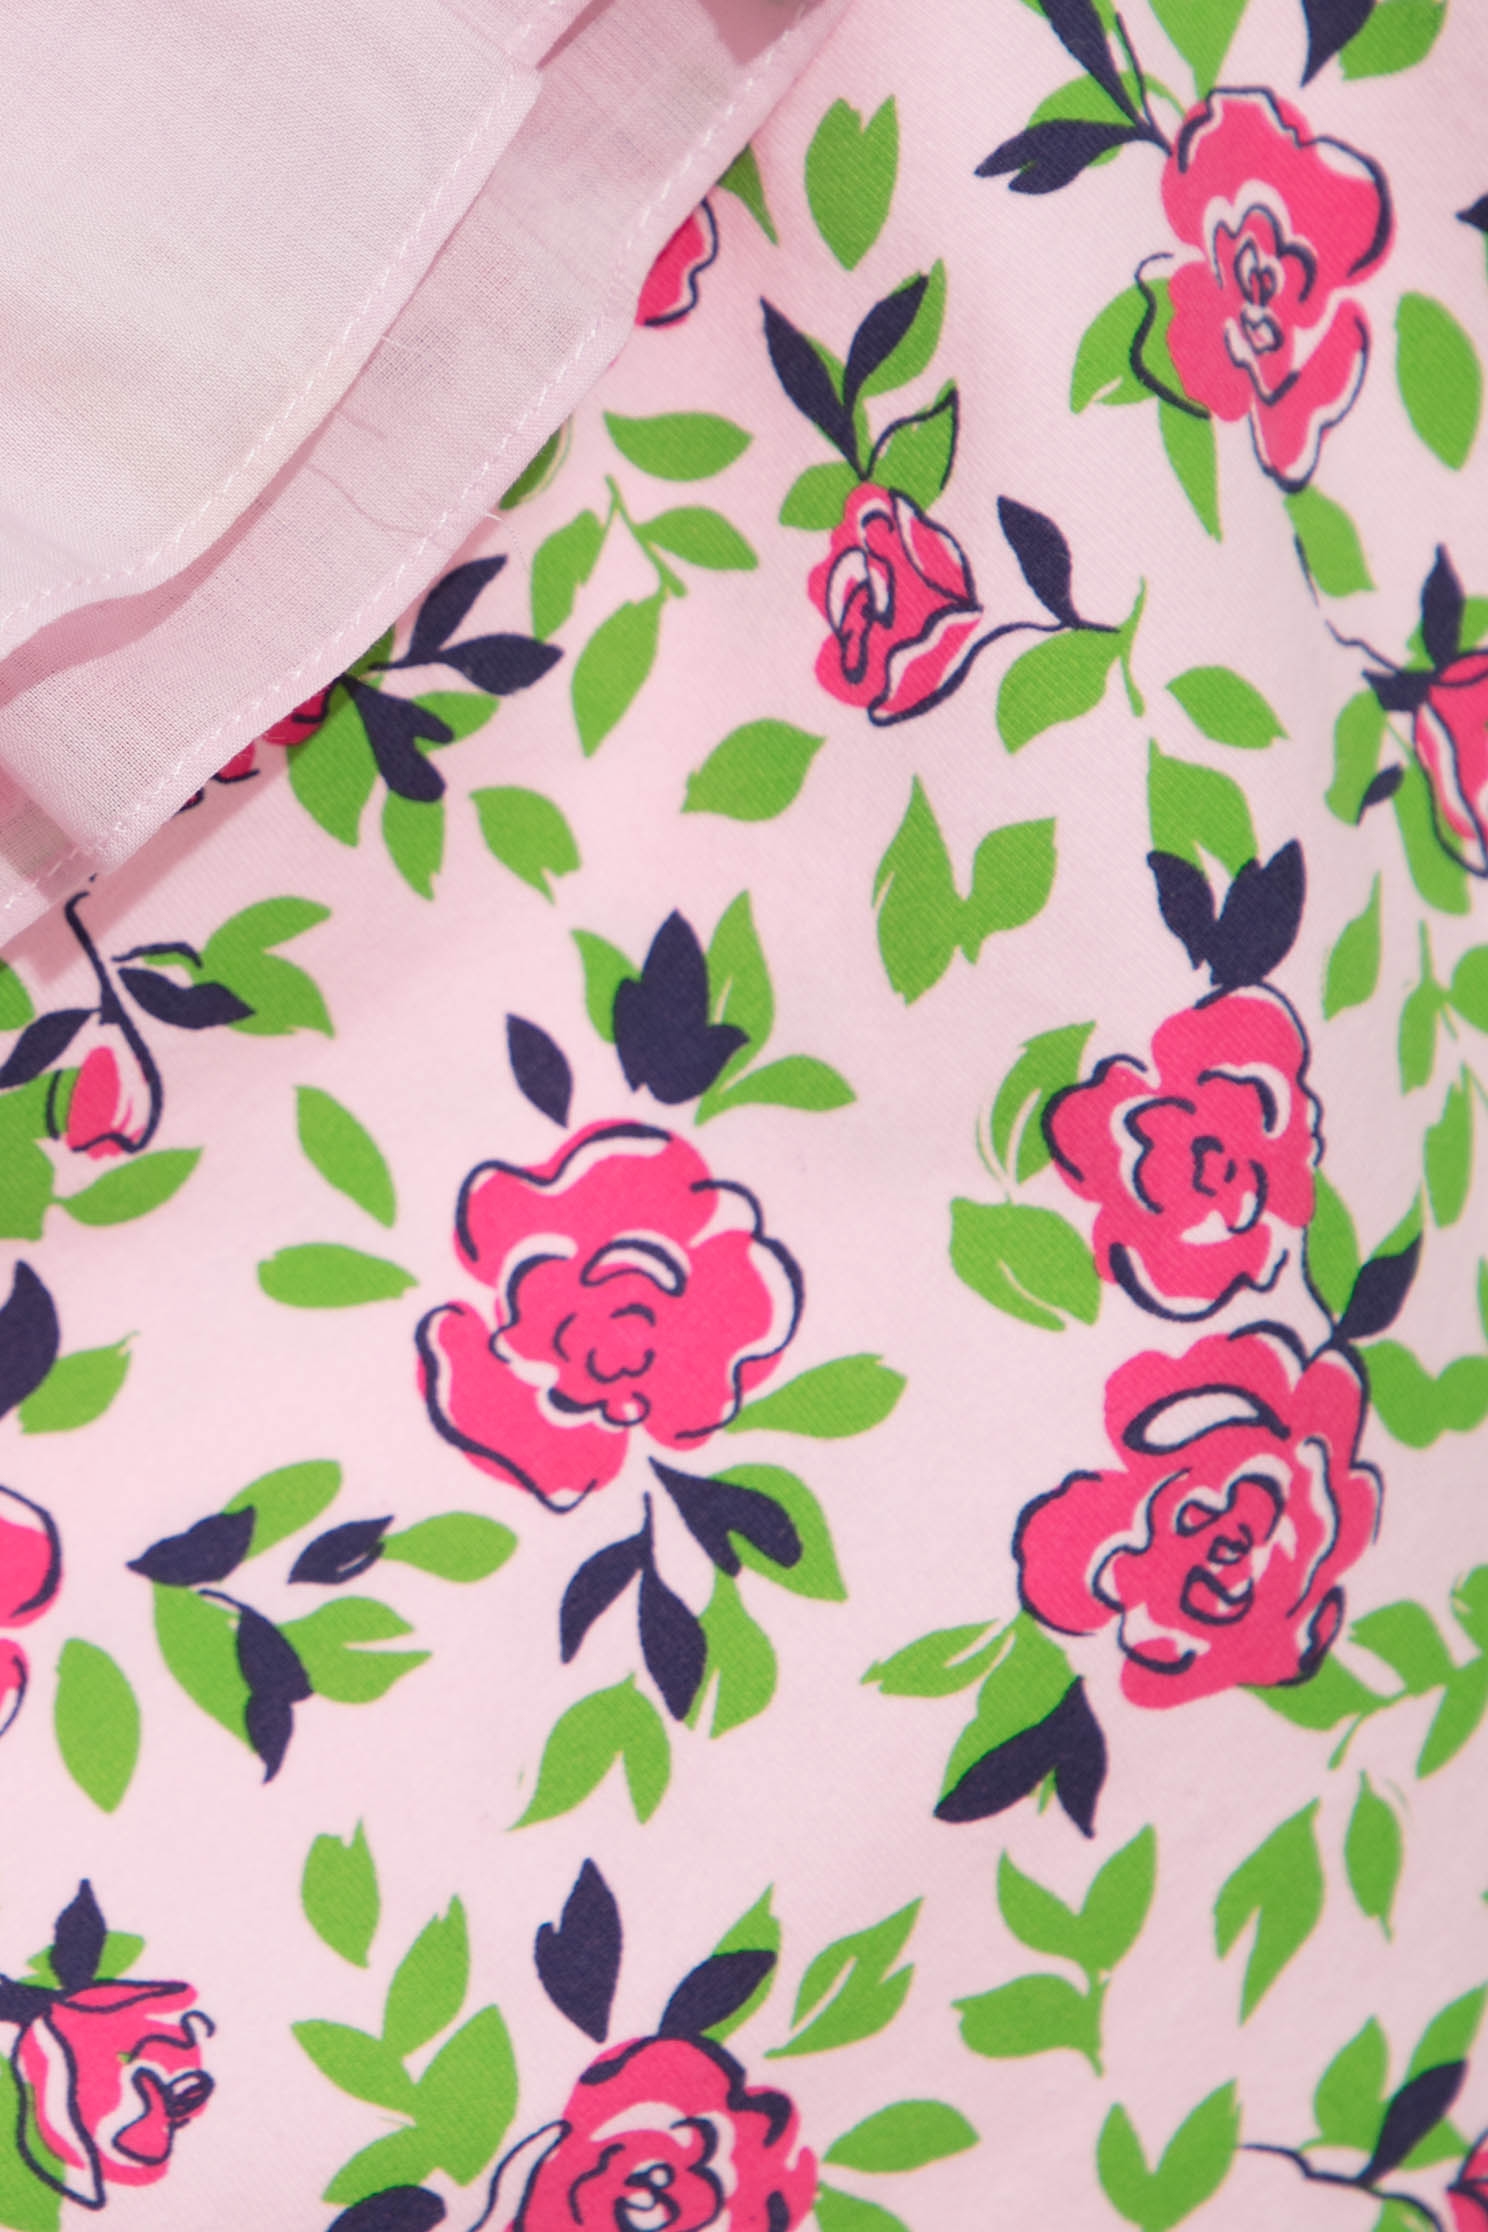 薔薇印花T恤上衣薔薇印花T恤上衣,T恤,上衣,春夏穿搭,母親節專區,純棉,花花世界,荷葉